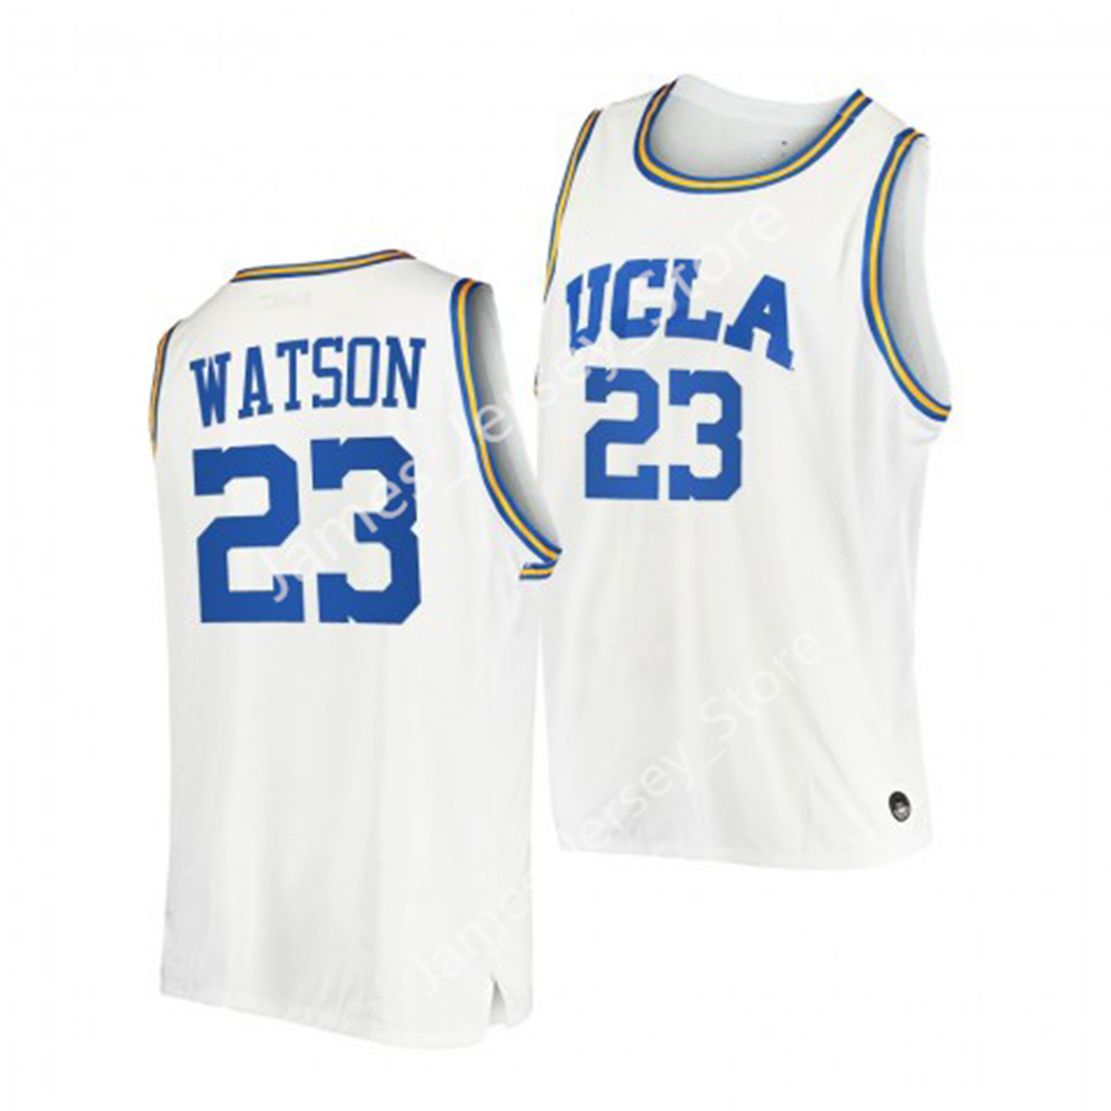 Peyton Watson Basketball Jersey_7